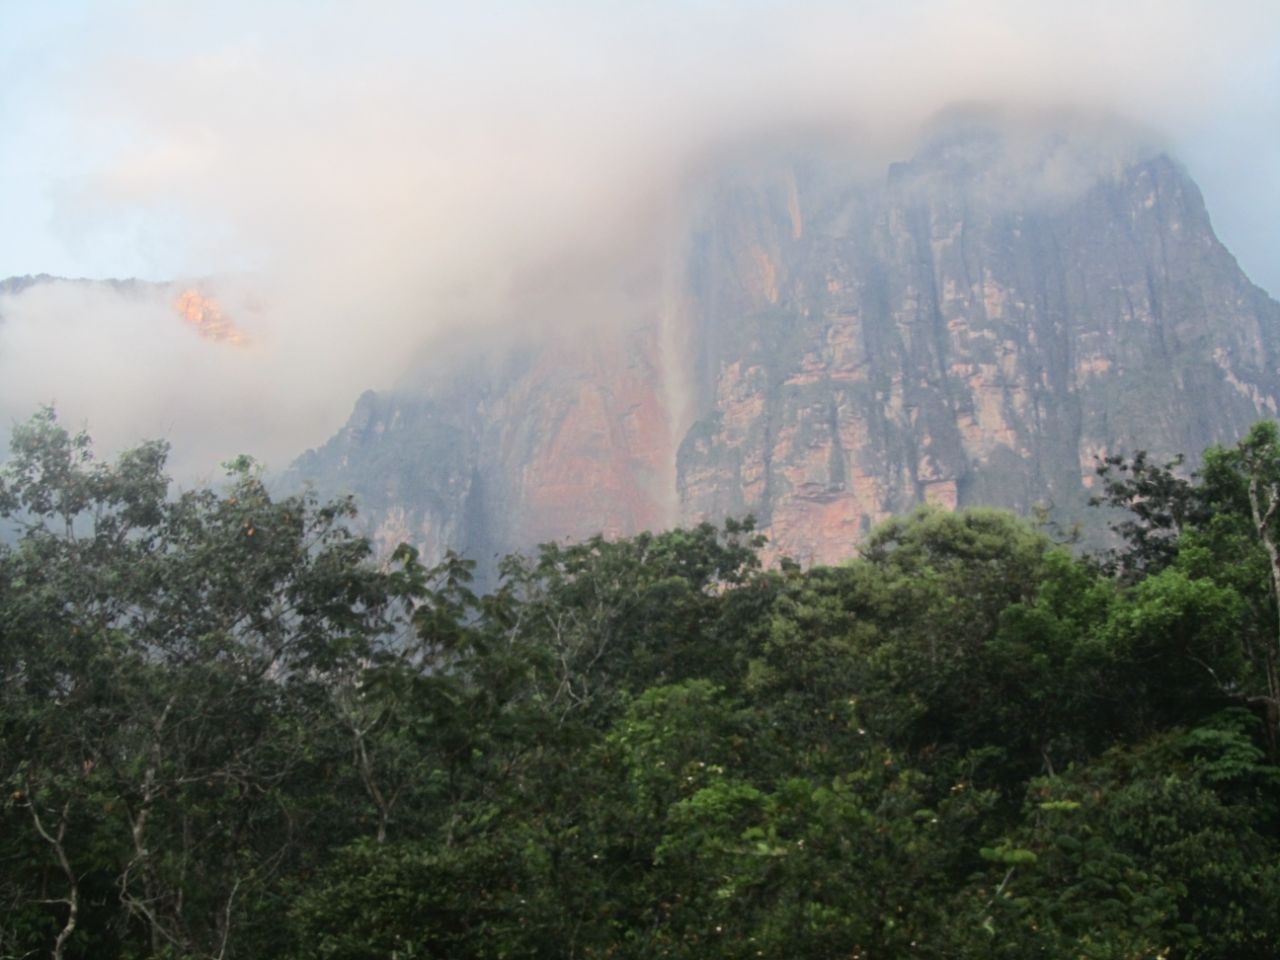 Здесь пороги – перекаты, да крутые берега. Ч.62 Национальный парк Канайма, Венесуэла